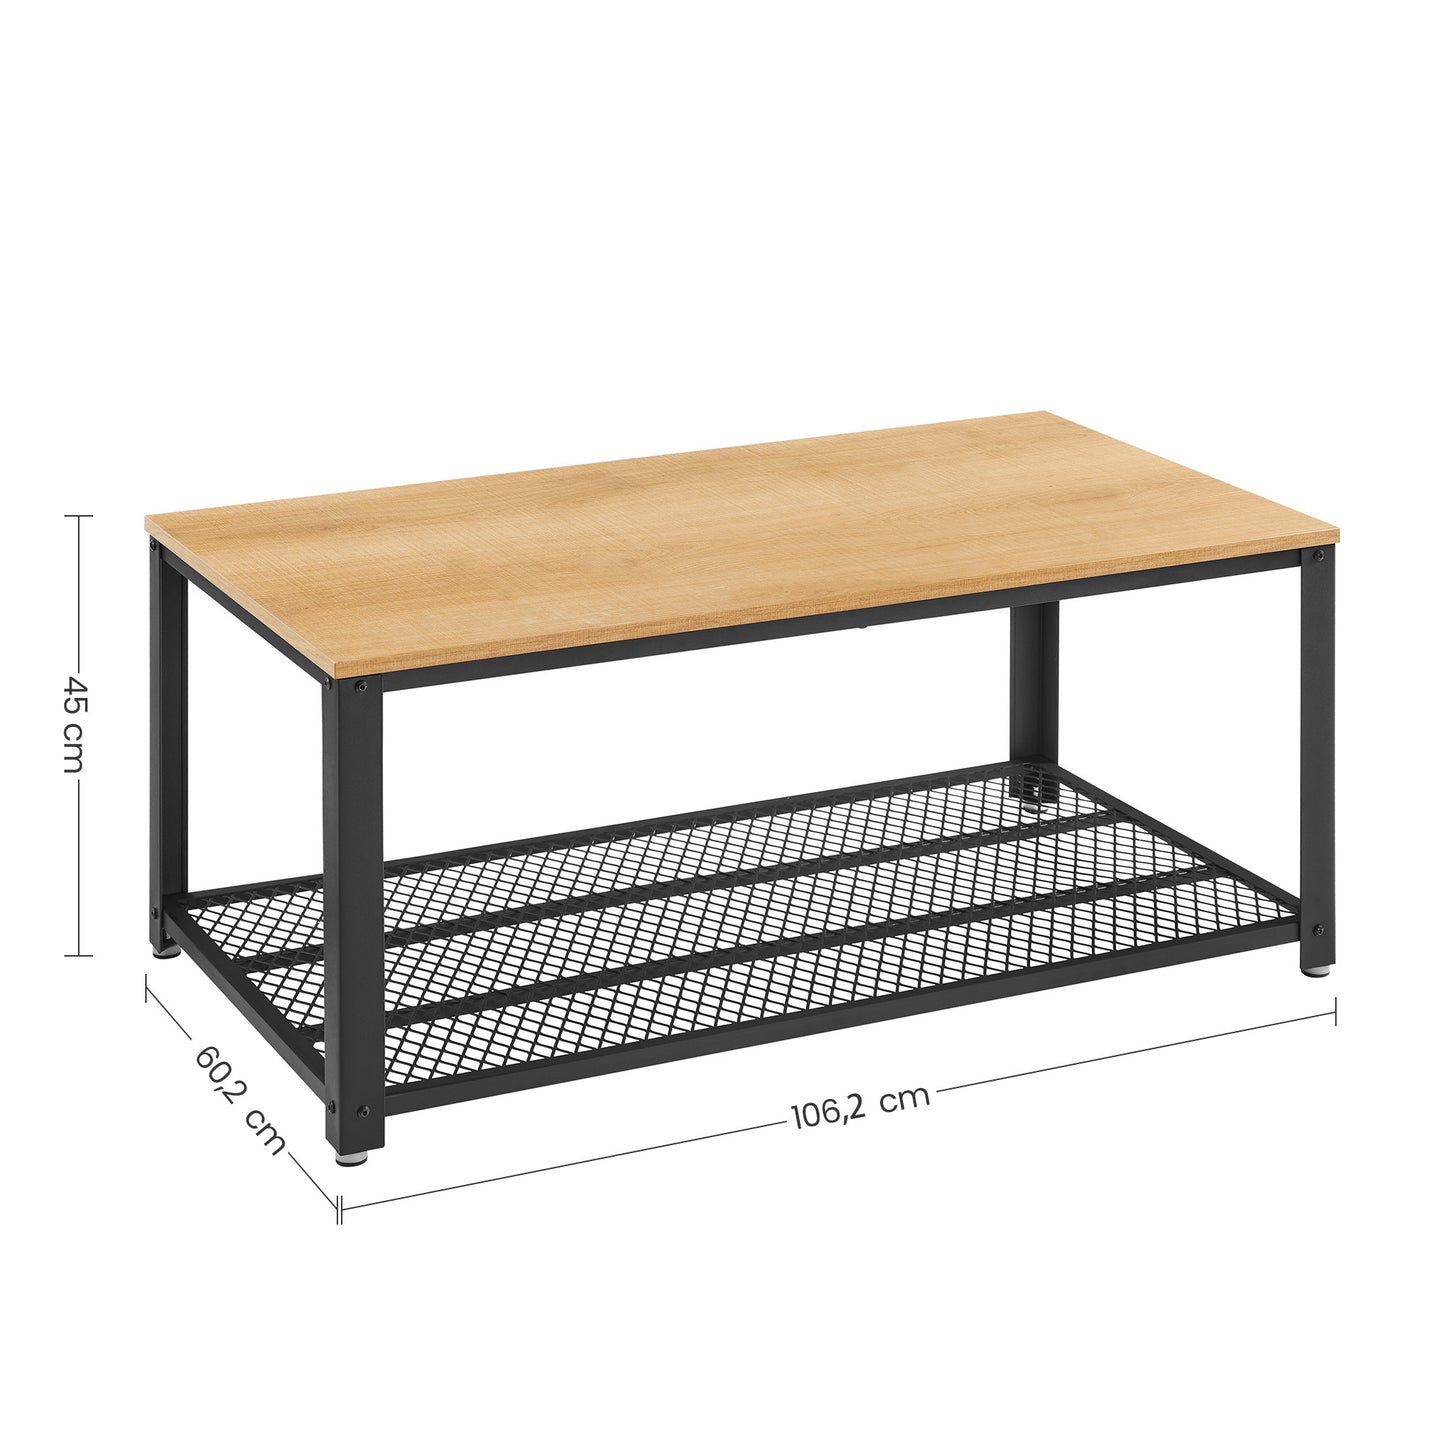 Table Basse au Design Industriel avec Grand Plateau JACKY Pieds réglables Protection du Sol Armature en métal - Stable - Chêne clair